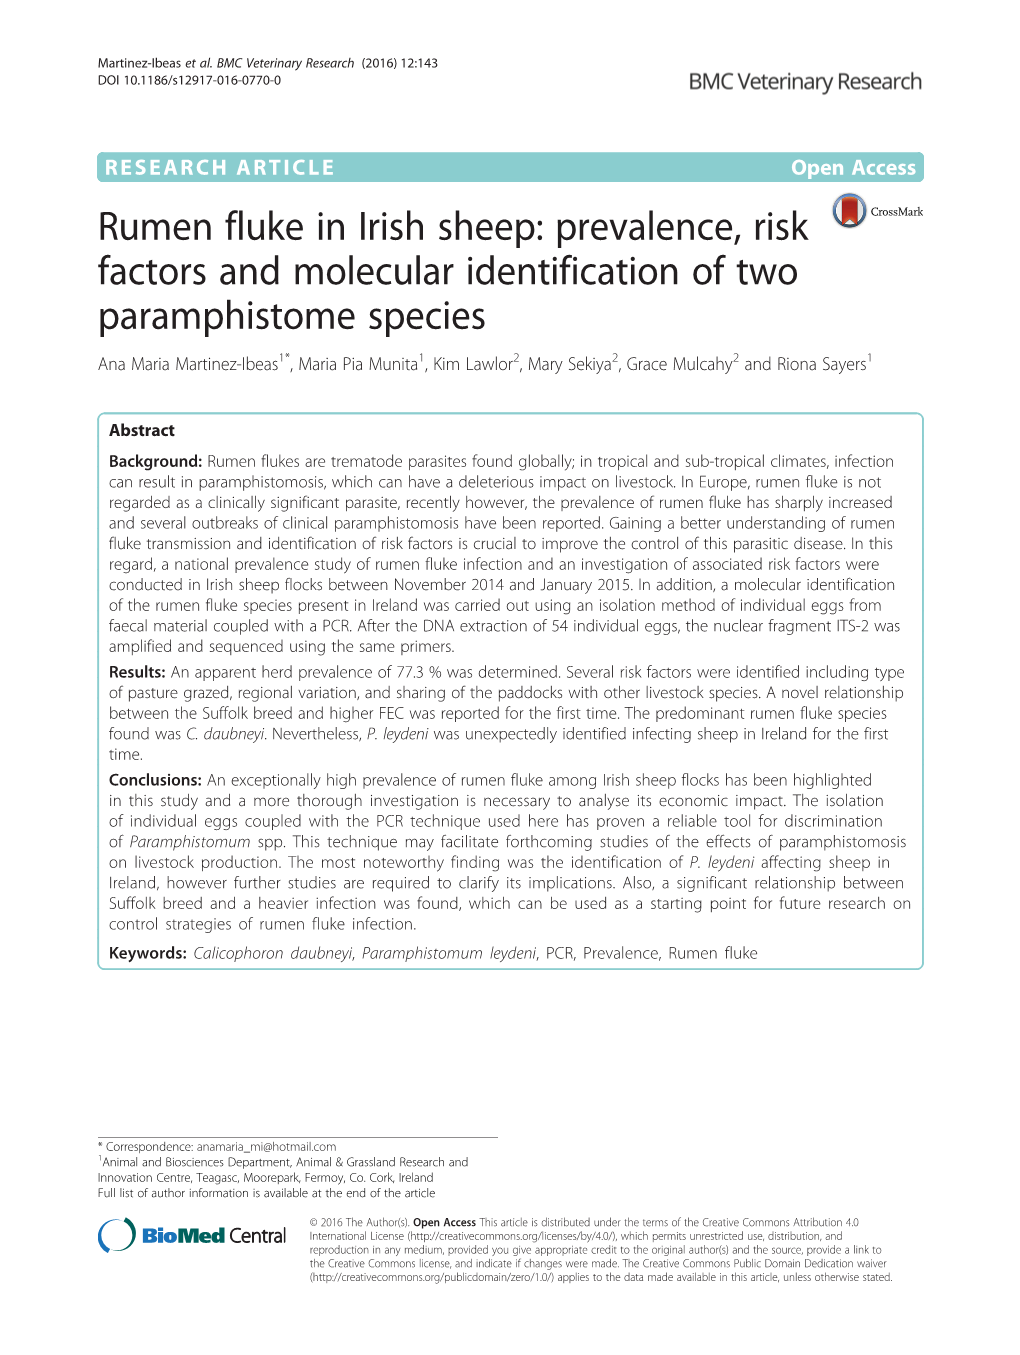 Rumen Fluke in Irish Sheep